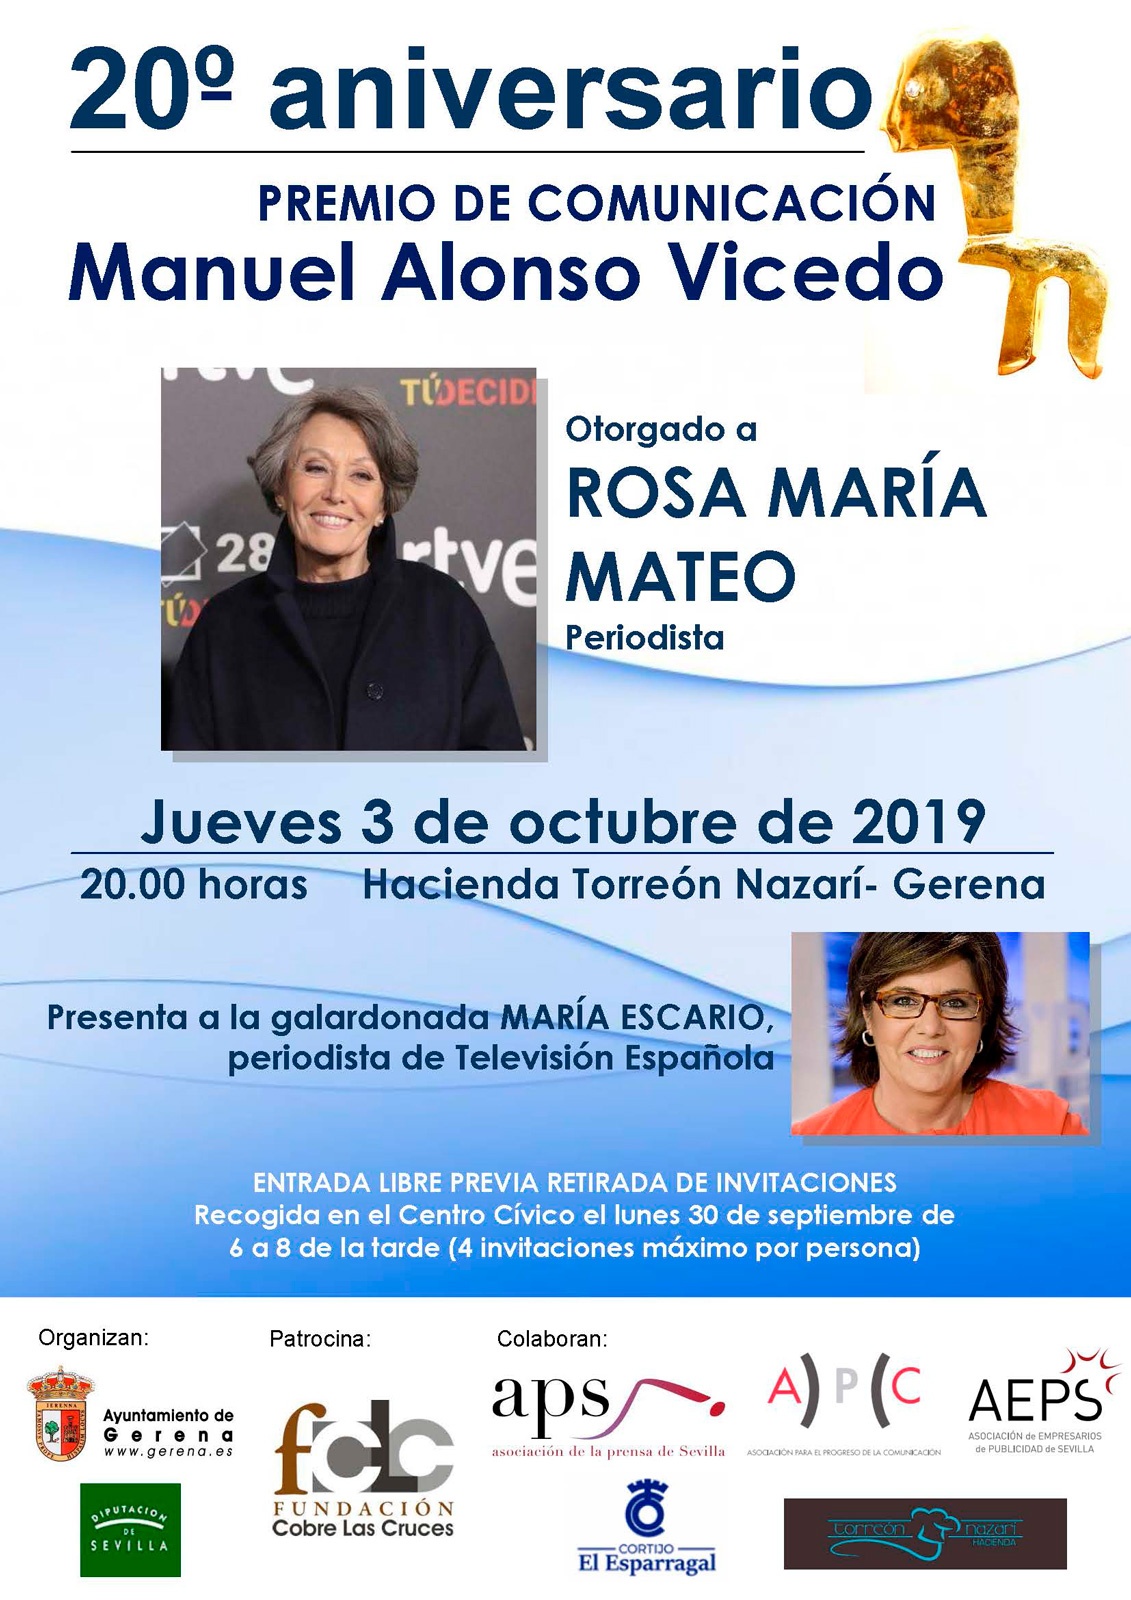 Premio de Comunicación Manuel Alonso Vicedo 2019